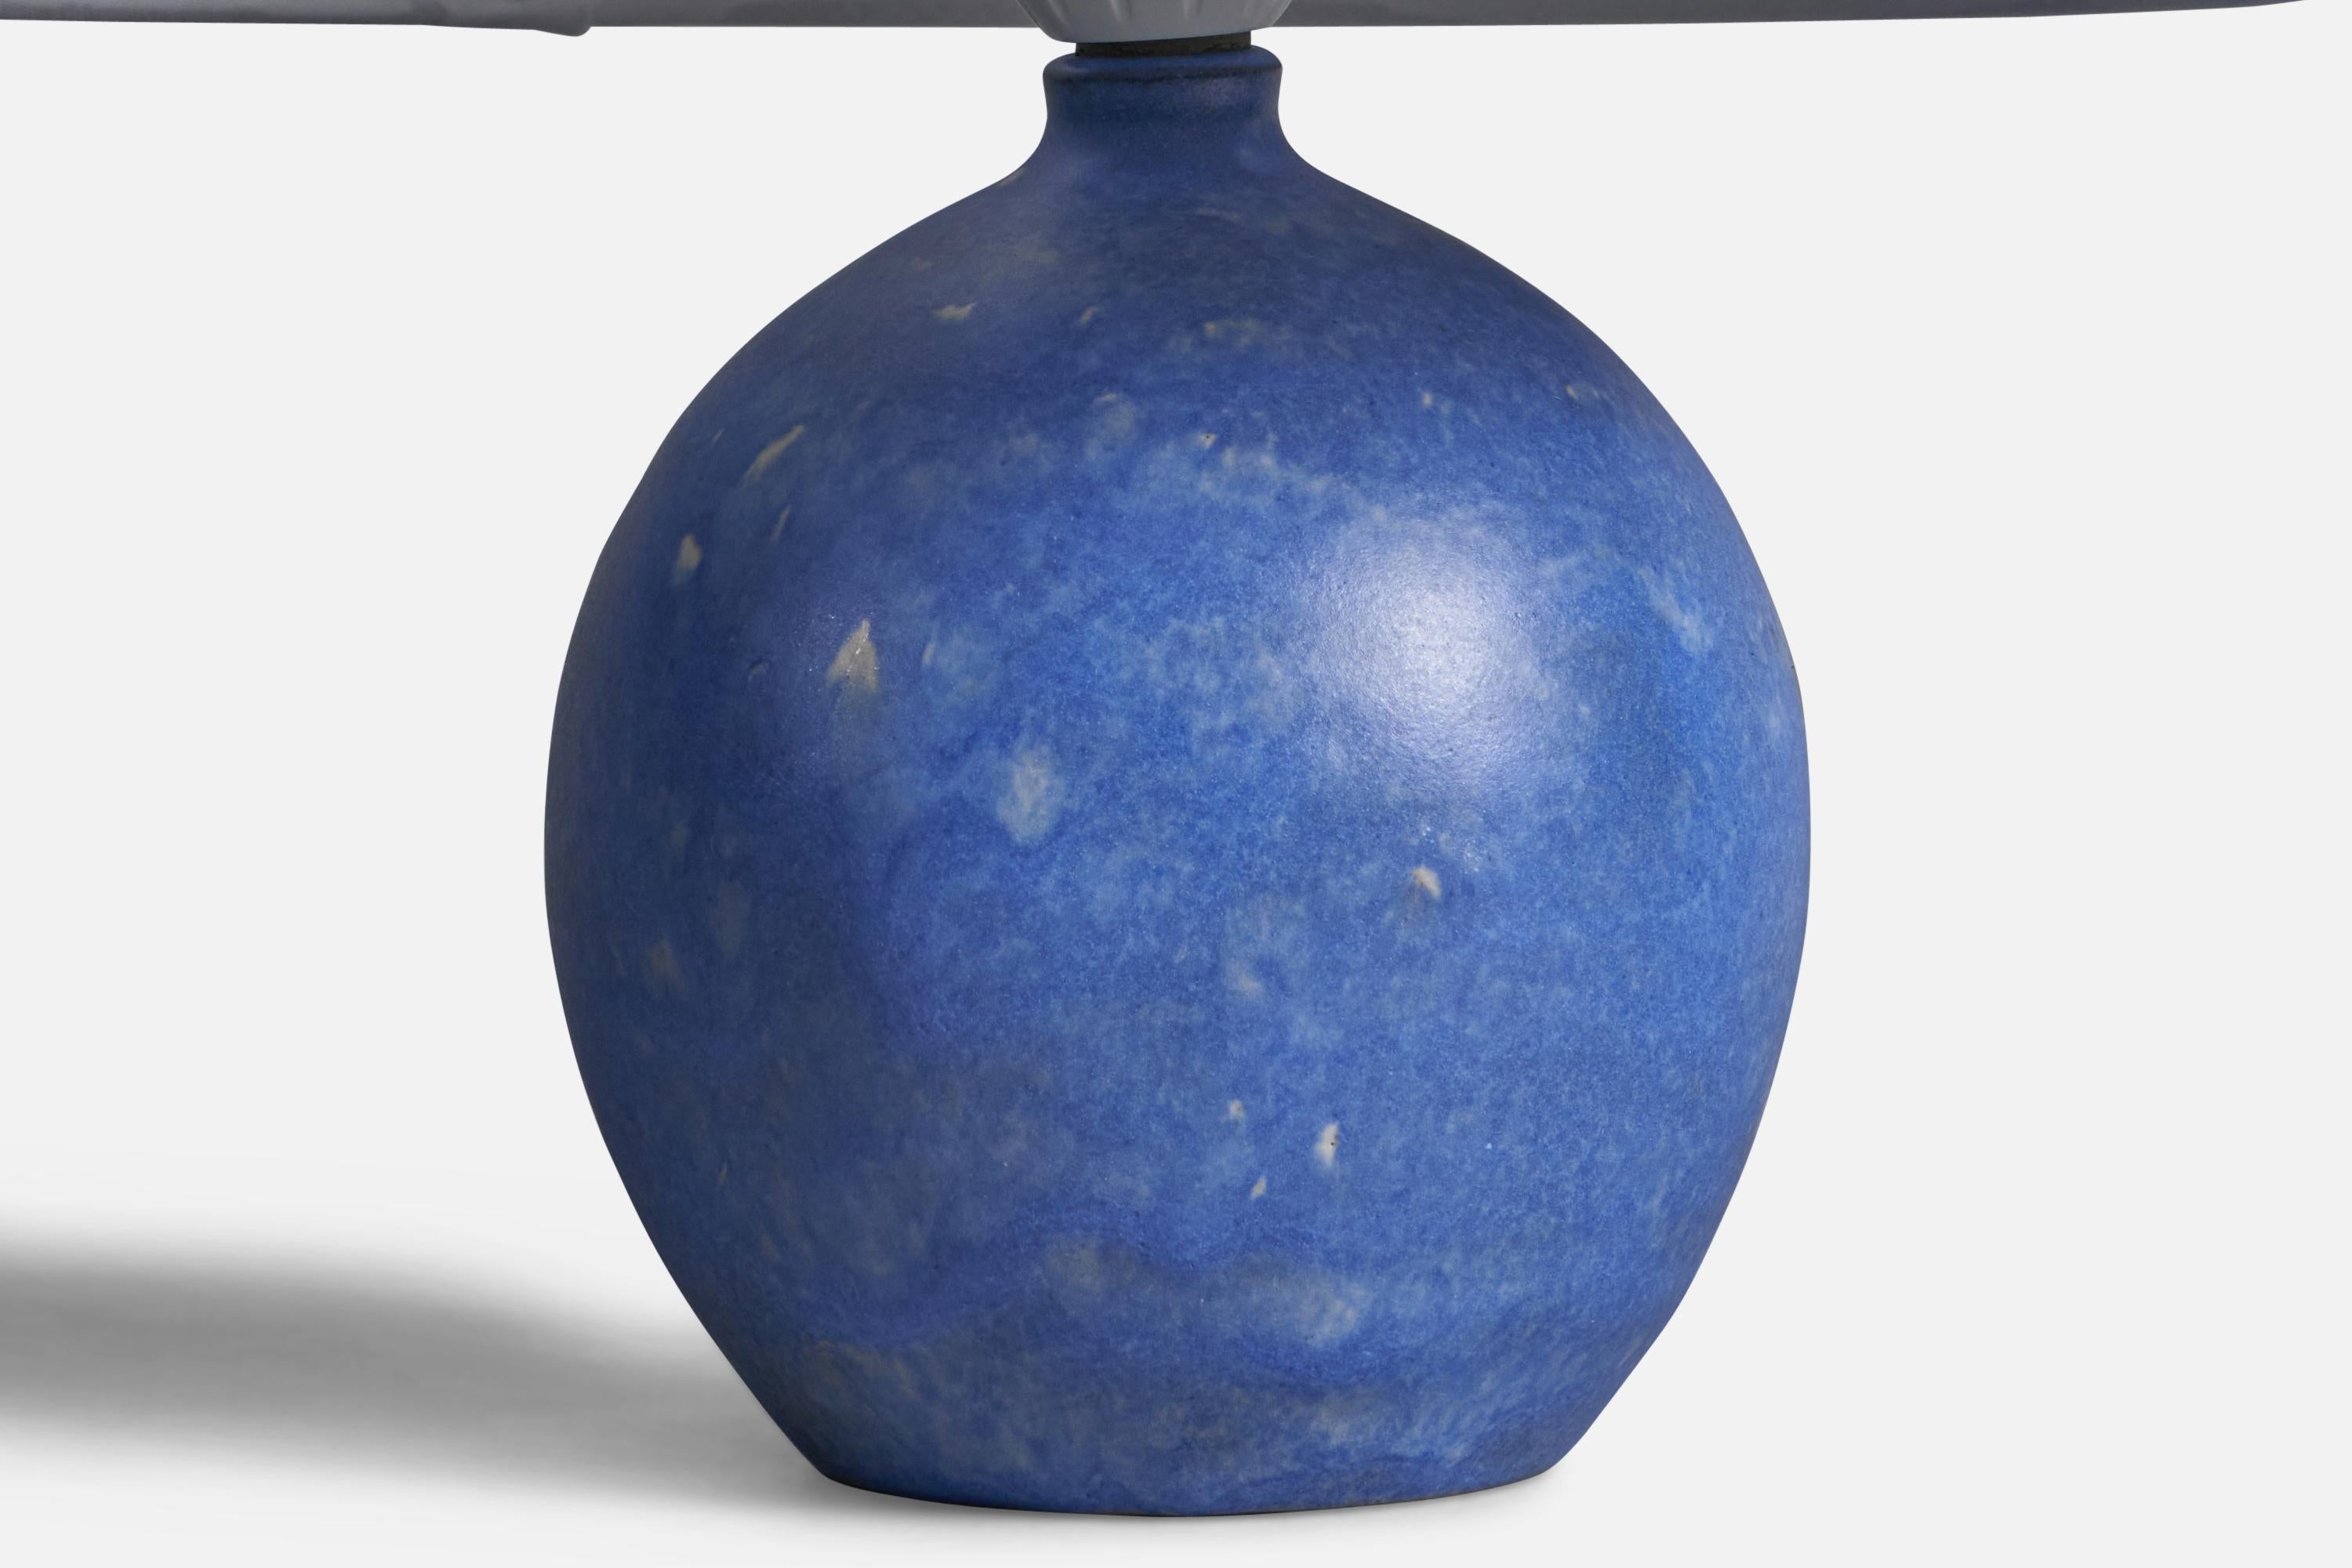 Lampe de table en grès émaillé bleu conçue et produite par Martin Flodén, Arvika, Suède, années 1960.

Dimensions de la lampe (pouces) : 8.15